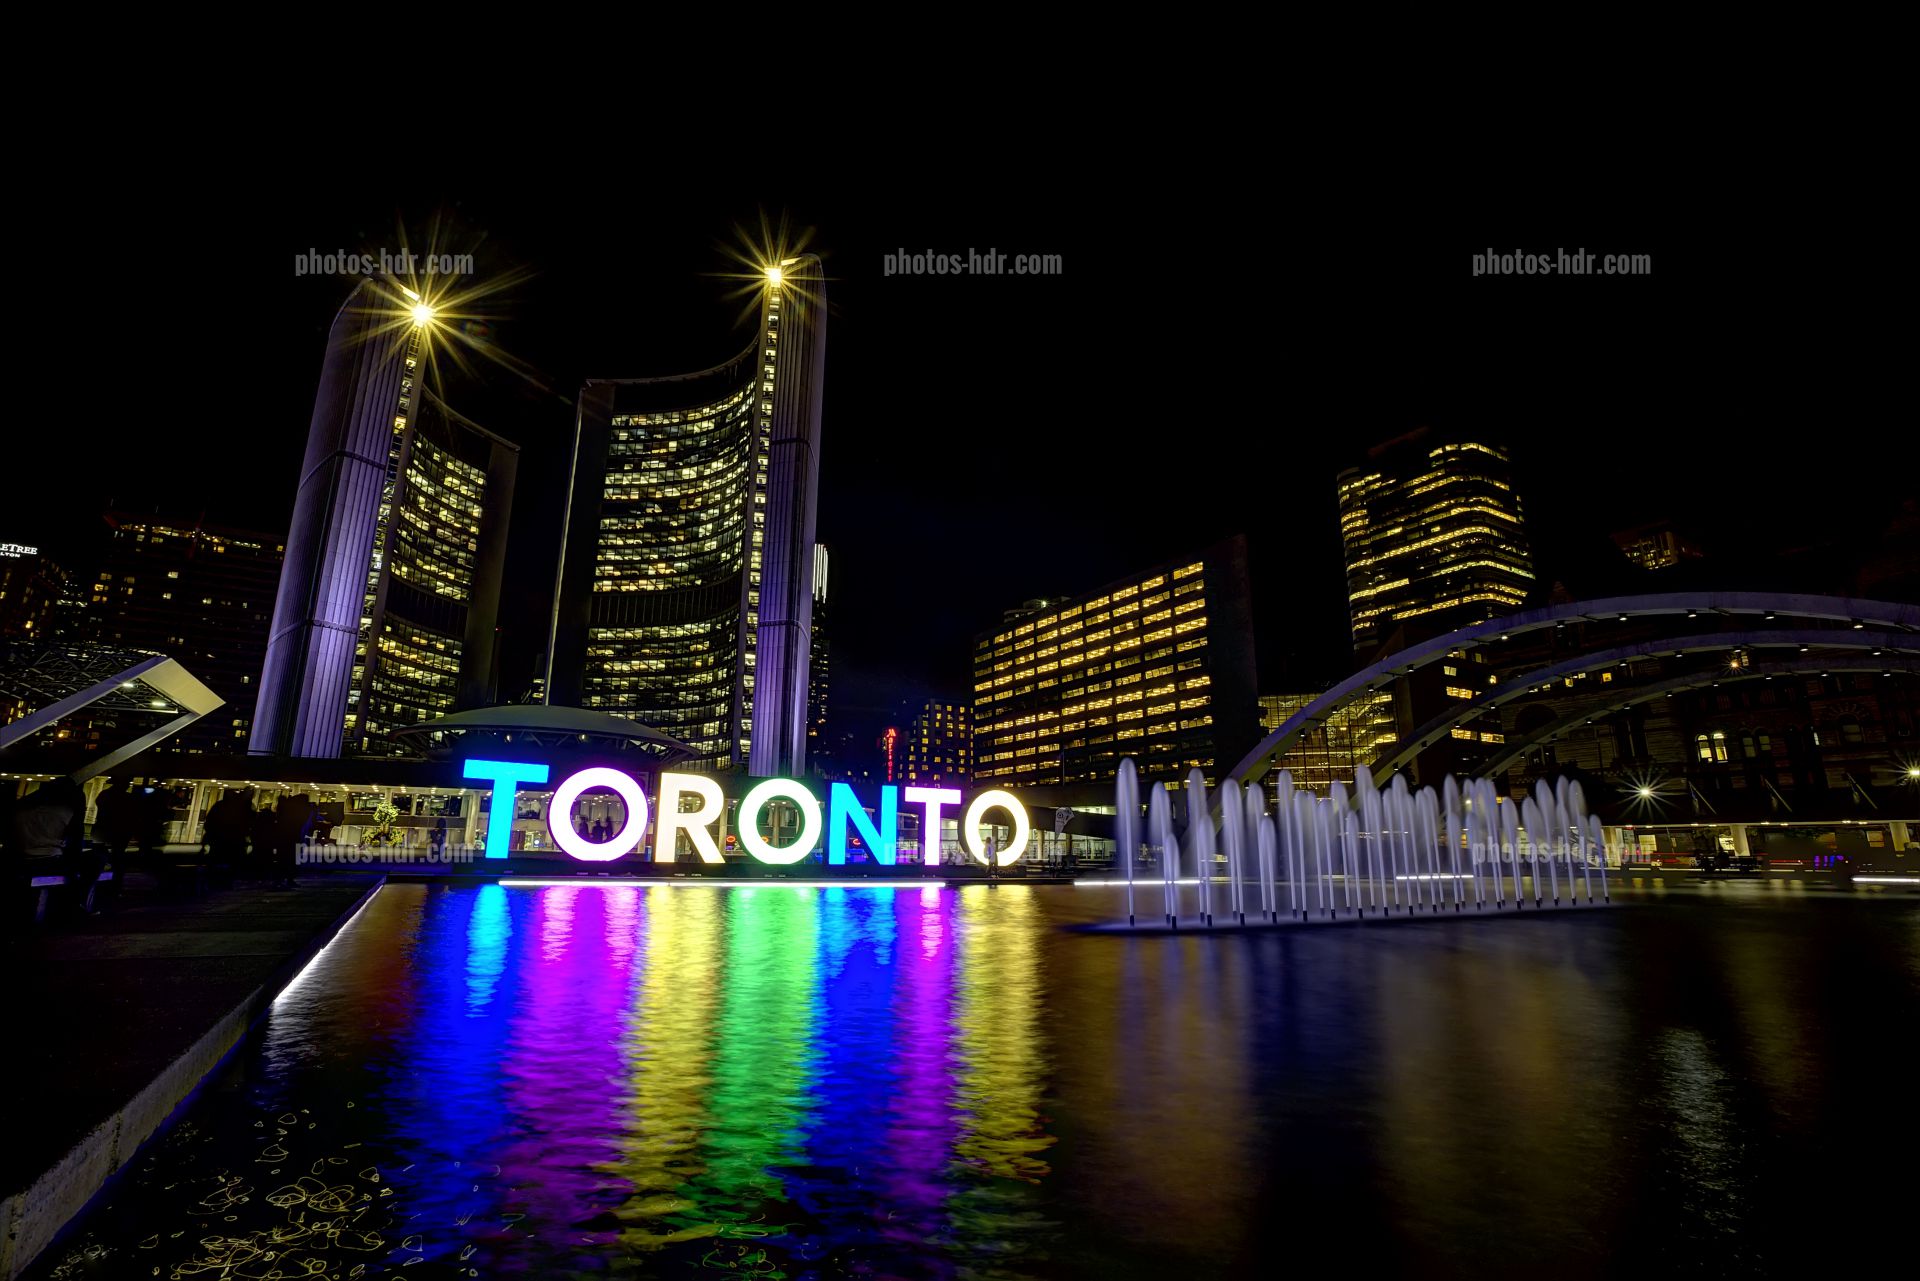 /Toronto by night